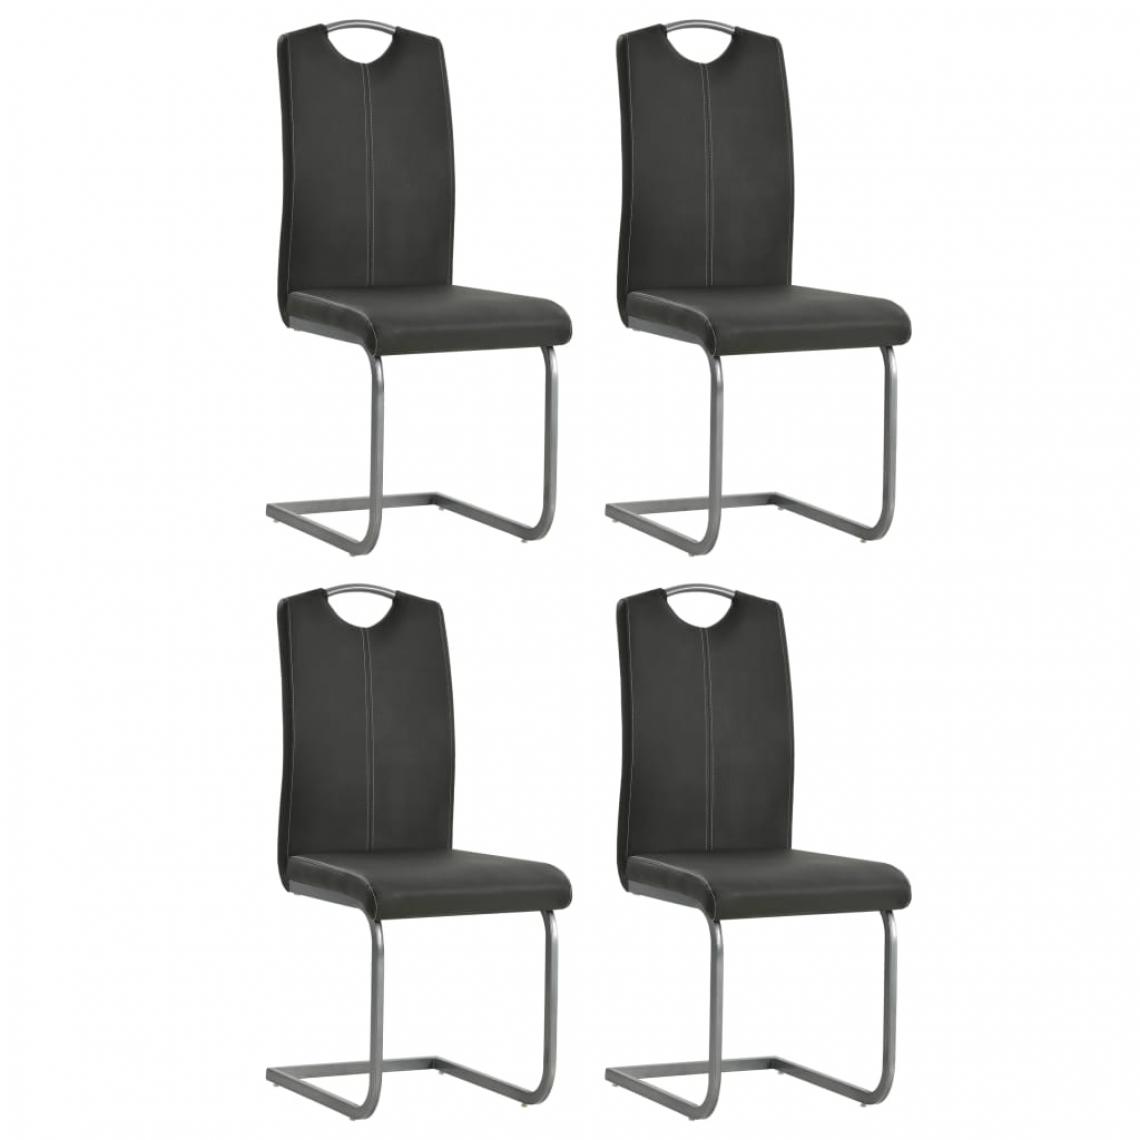 Decoshop26 - Lot de 4 chaises de salle à manger cuisine design moderne cantilever en similicuir gris CDS021374 - Chaises